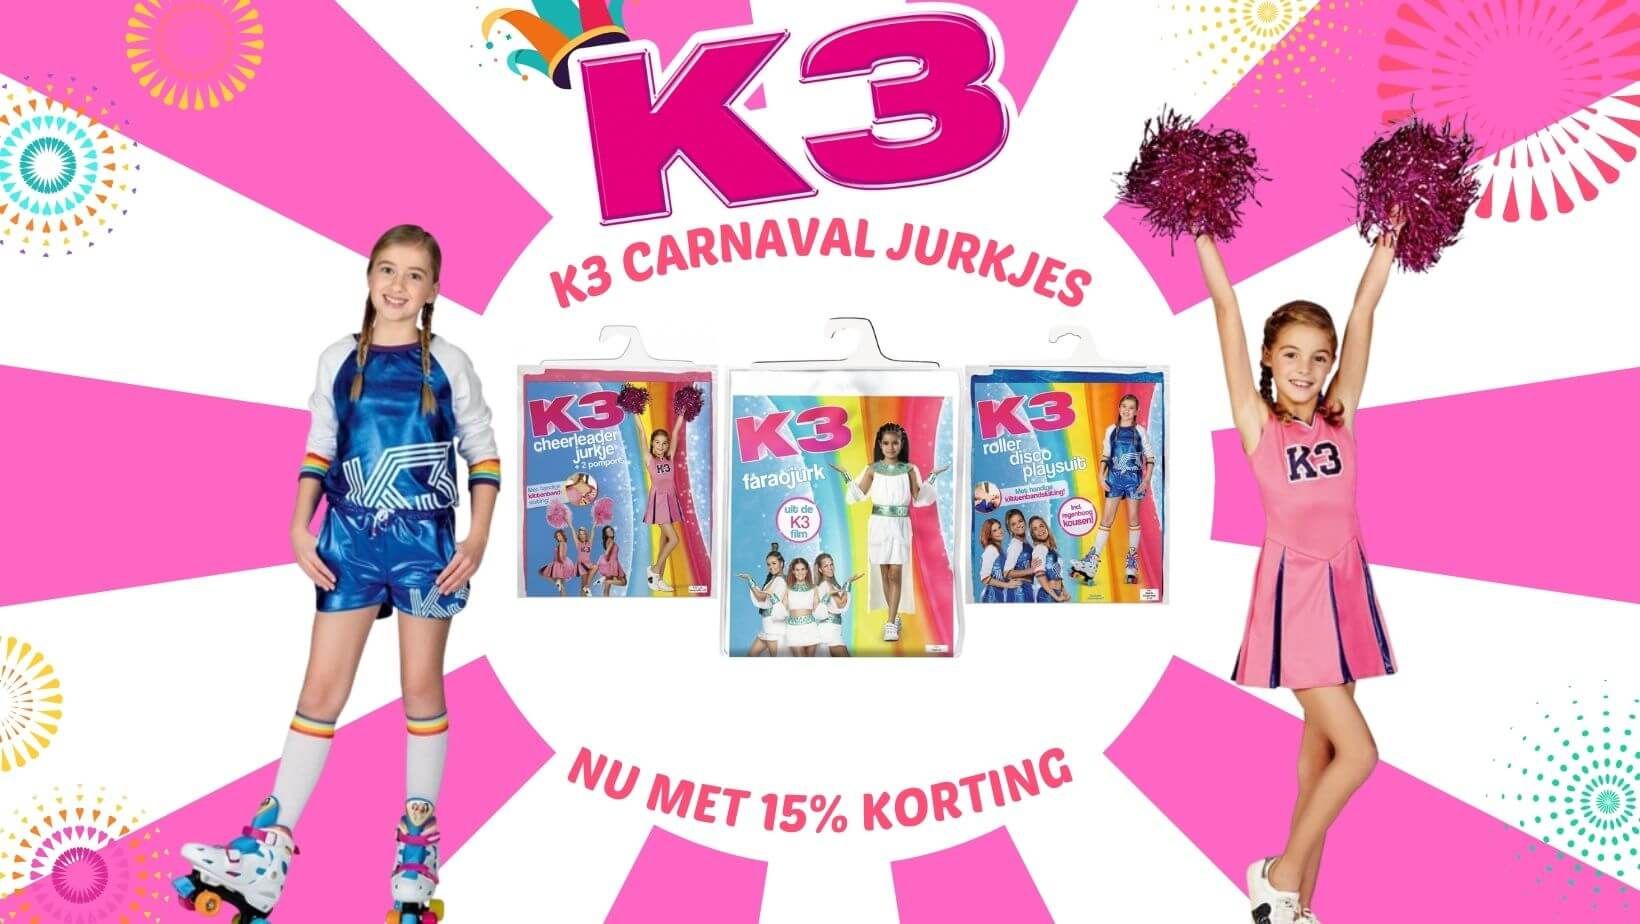 K3 carnaval jurkjes